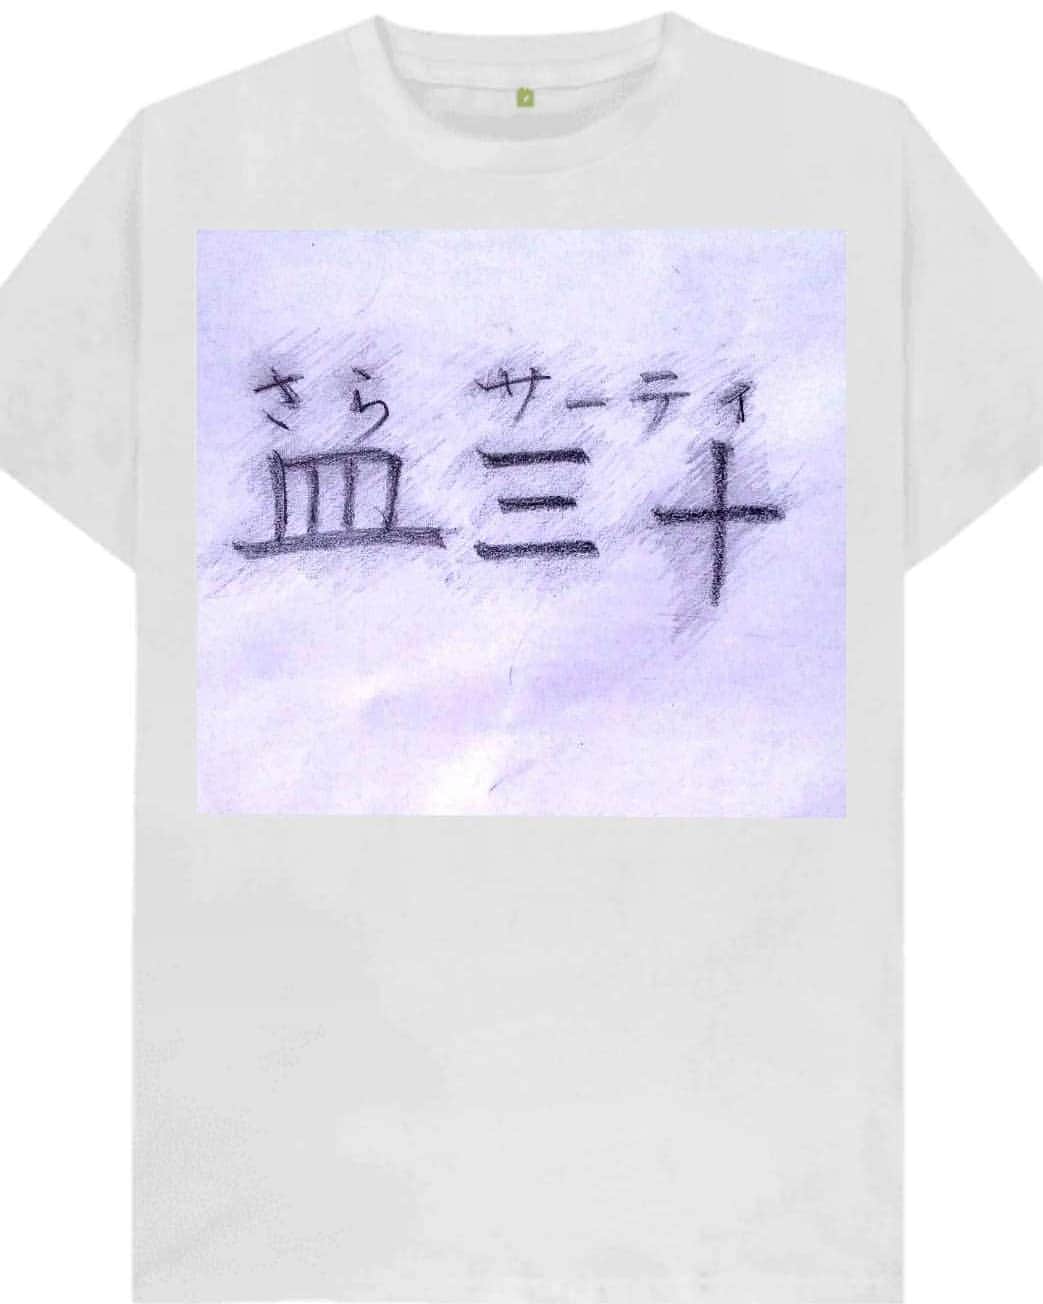 松原義和のインスタグラム：「僕の考えた文字Tシャツ #風藤松原#松原義和#Tシャツ#文字#文字Tシャツ#ネタ#小ネタ#ネタTシャツ#ファッション#白T#お笑い#笑い#fashion#love#shirt#gu#ユニクロ#japanese#white#洋服#clothes#interesting#漢字#kanji#follow」